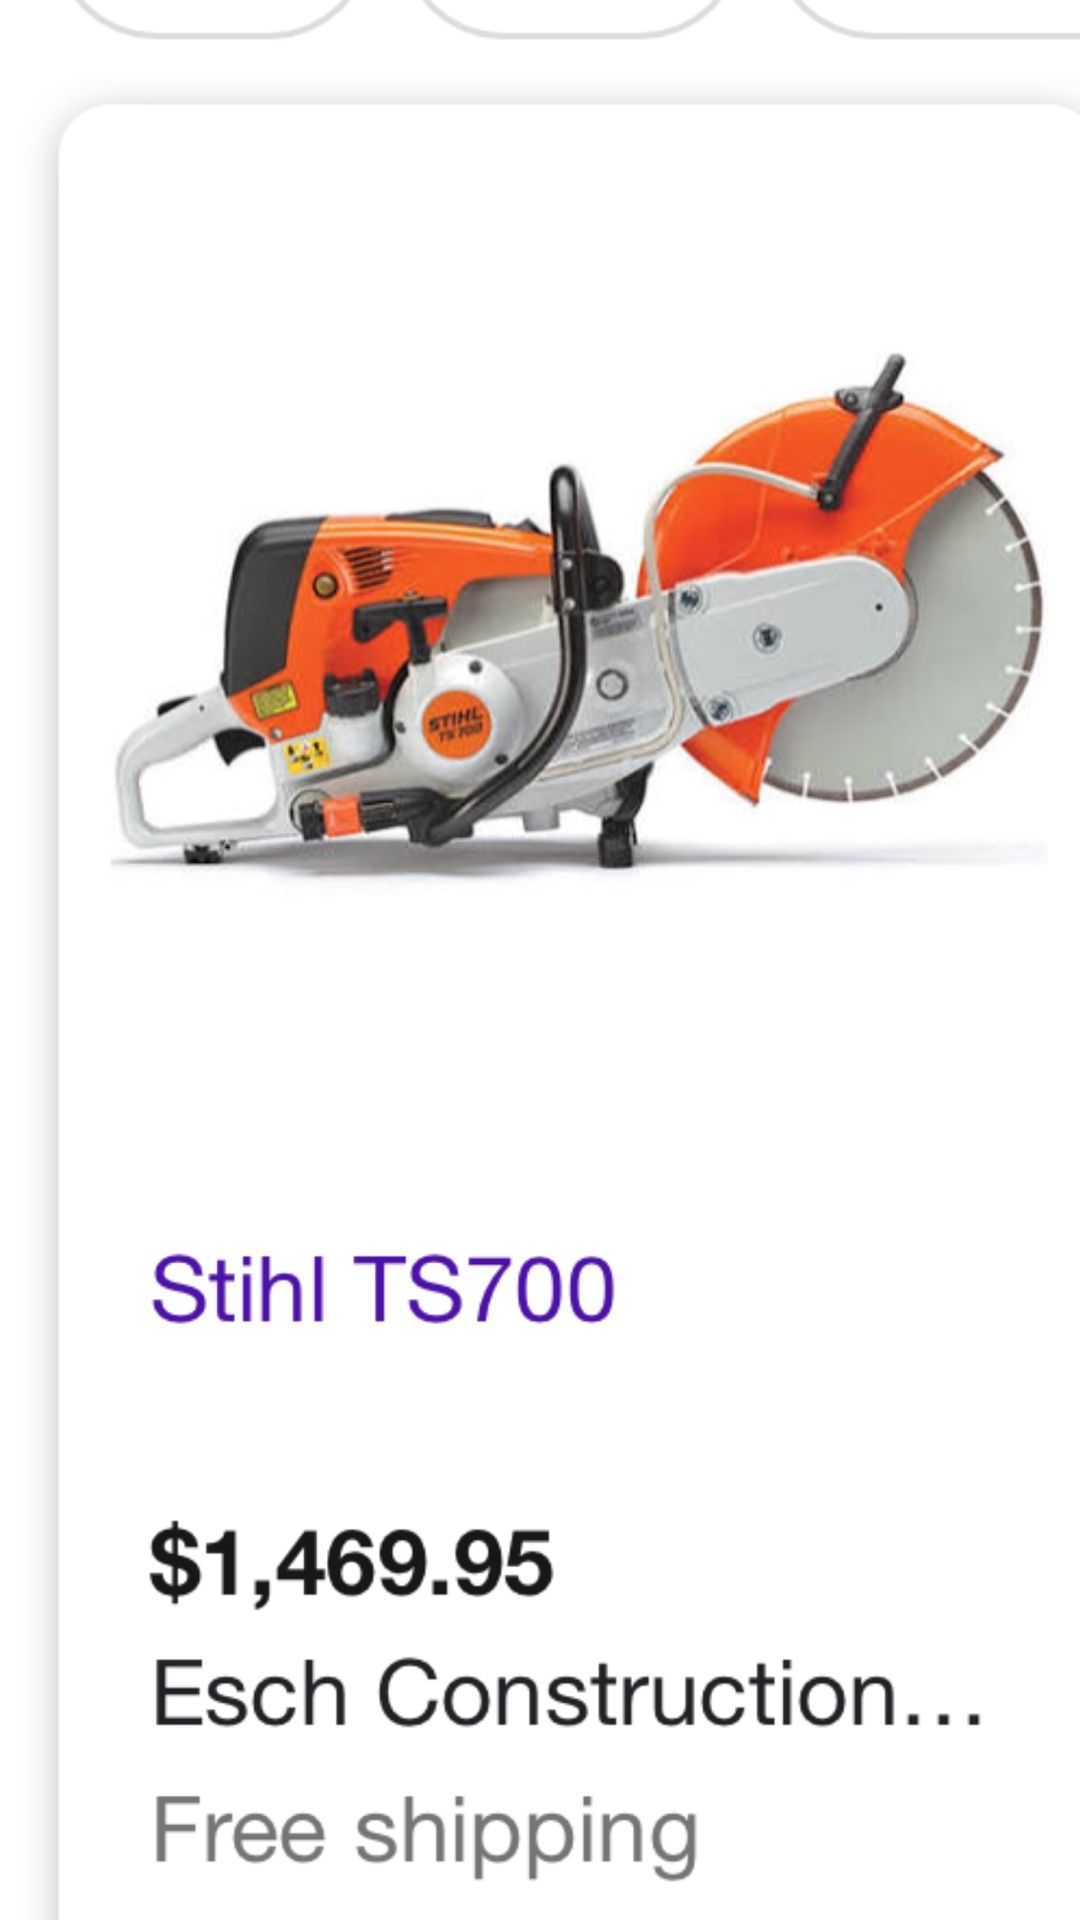 Sthil TS700 concret saw